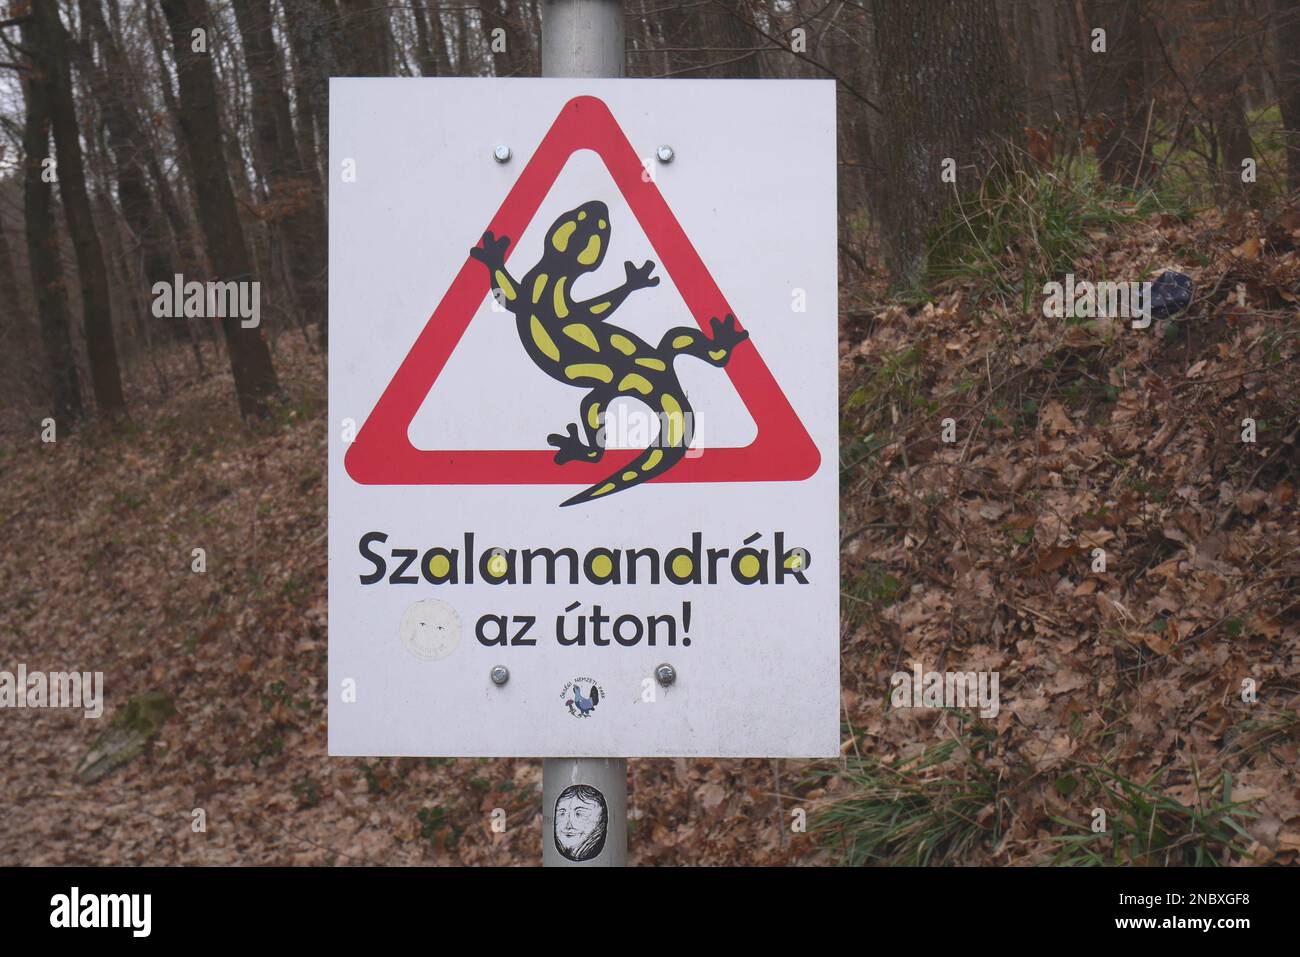 Le panneau de signalisation routière en hongrois avertissant les conducteurs que des salamandres d'incendie (salamandra salamandra) peuvent être sur la route, Koszeg Hills, Hongrie Banque D'Images